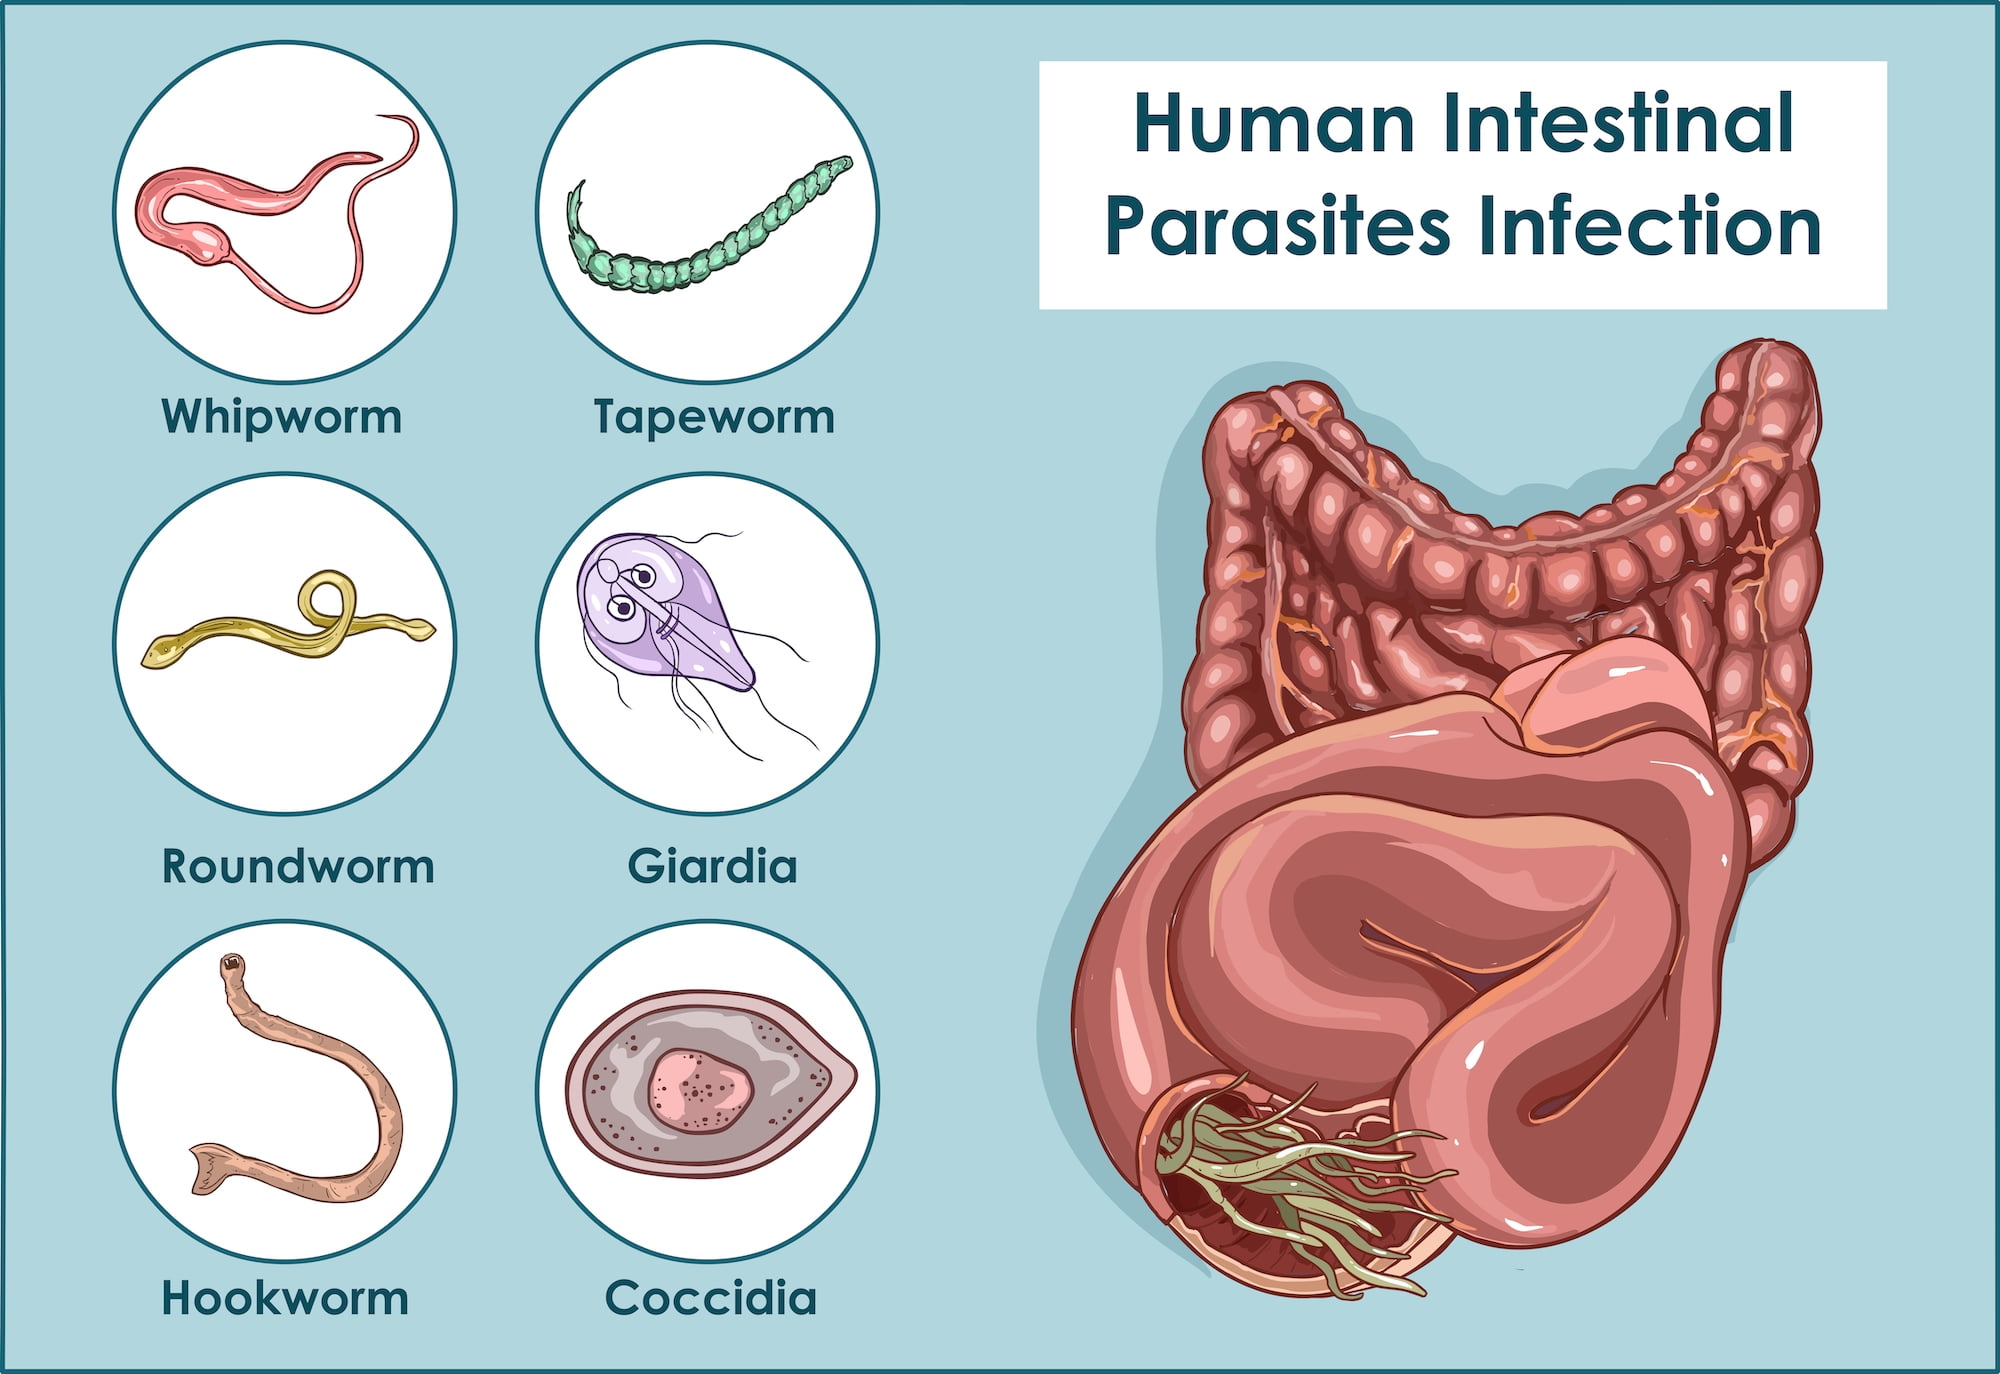 Human Intestinal Parasites Infection